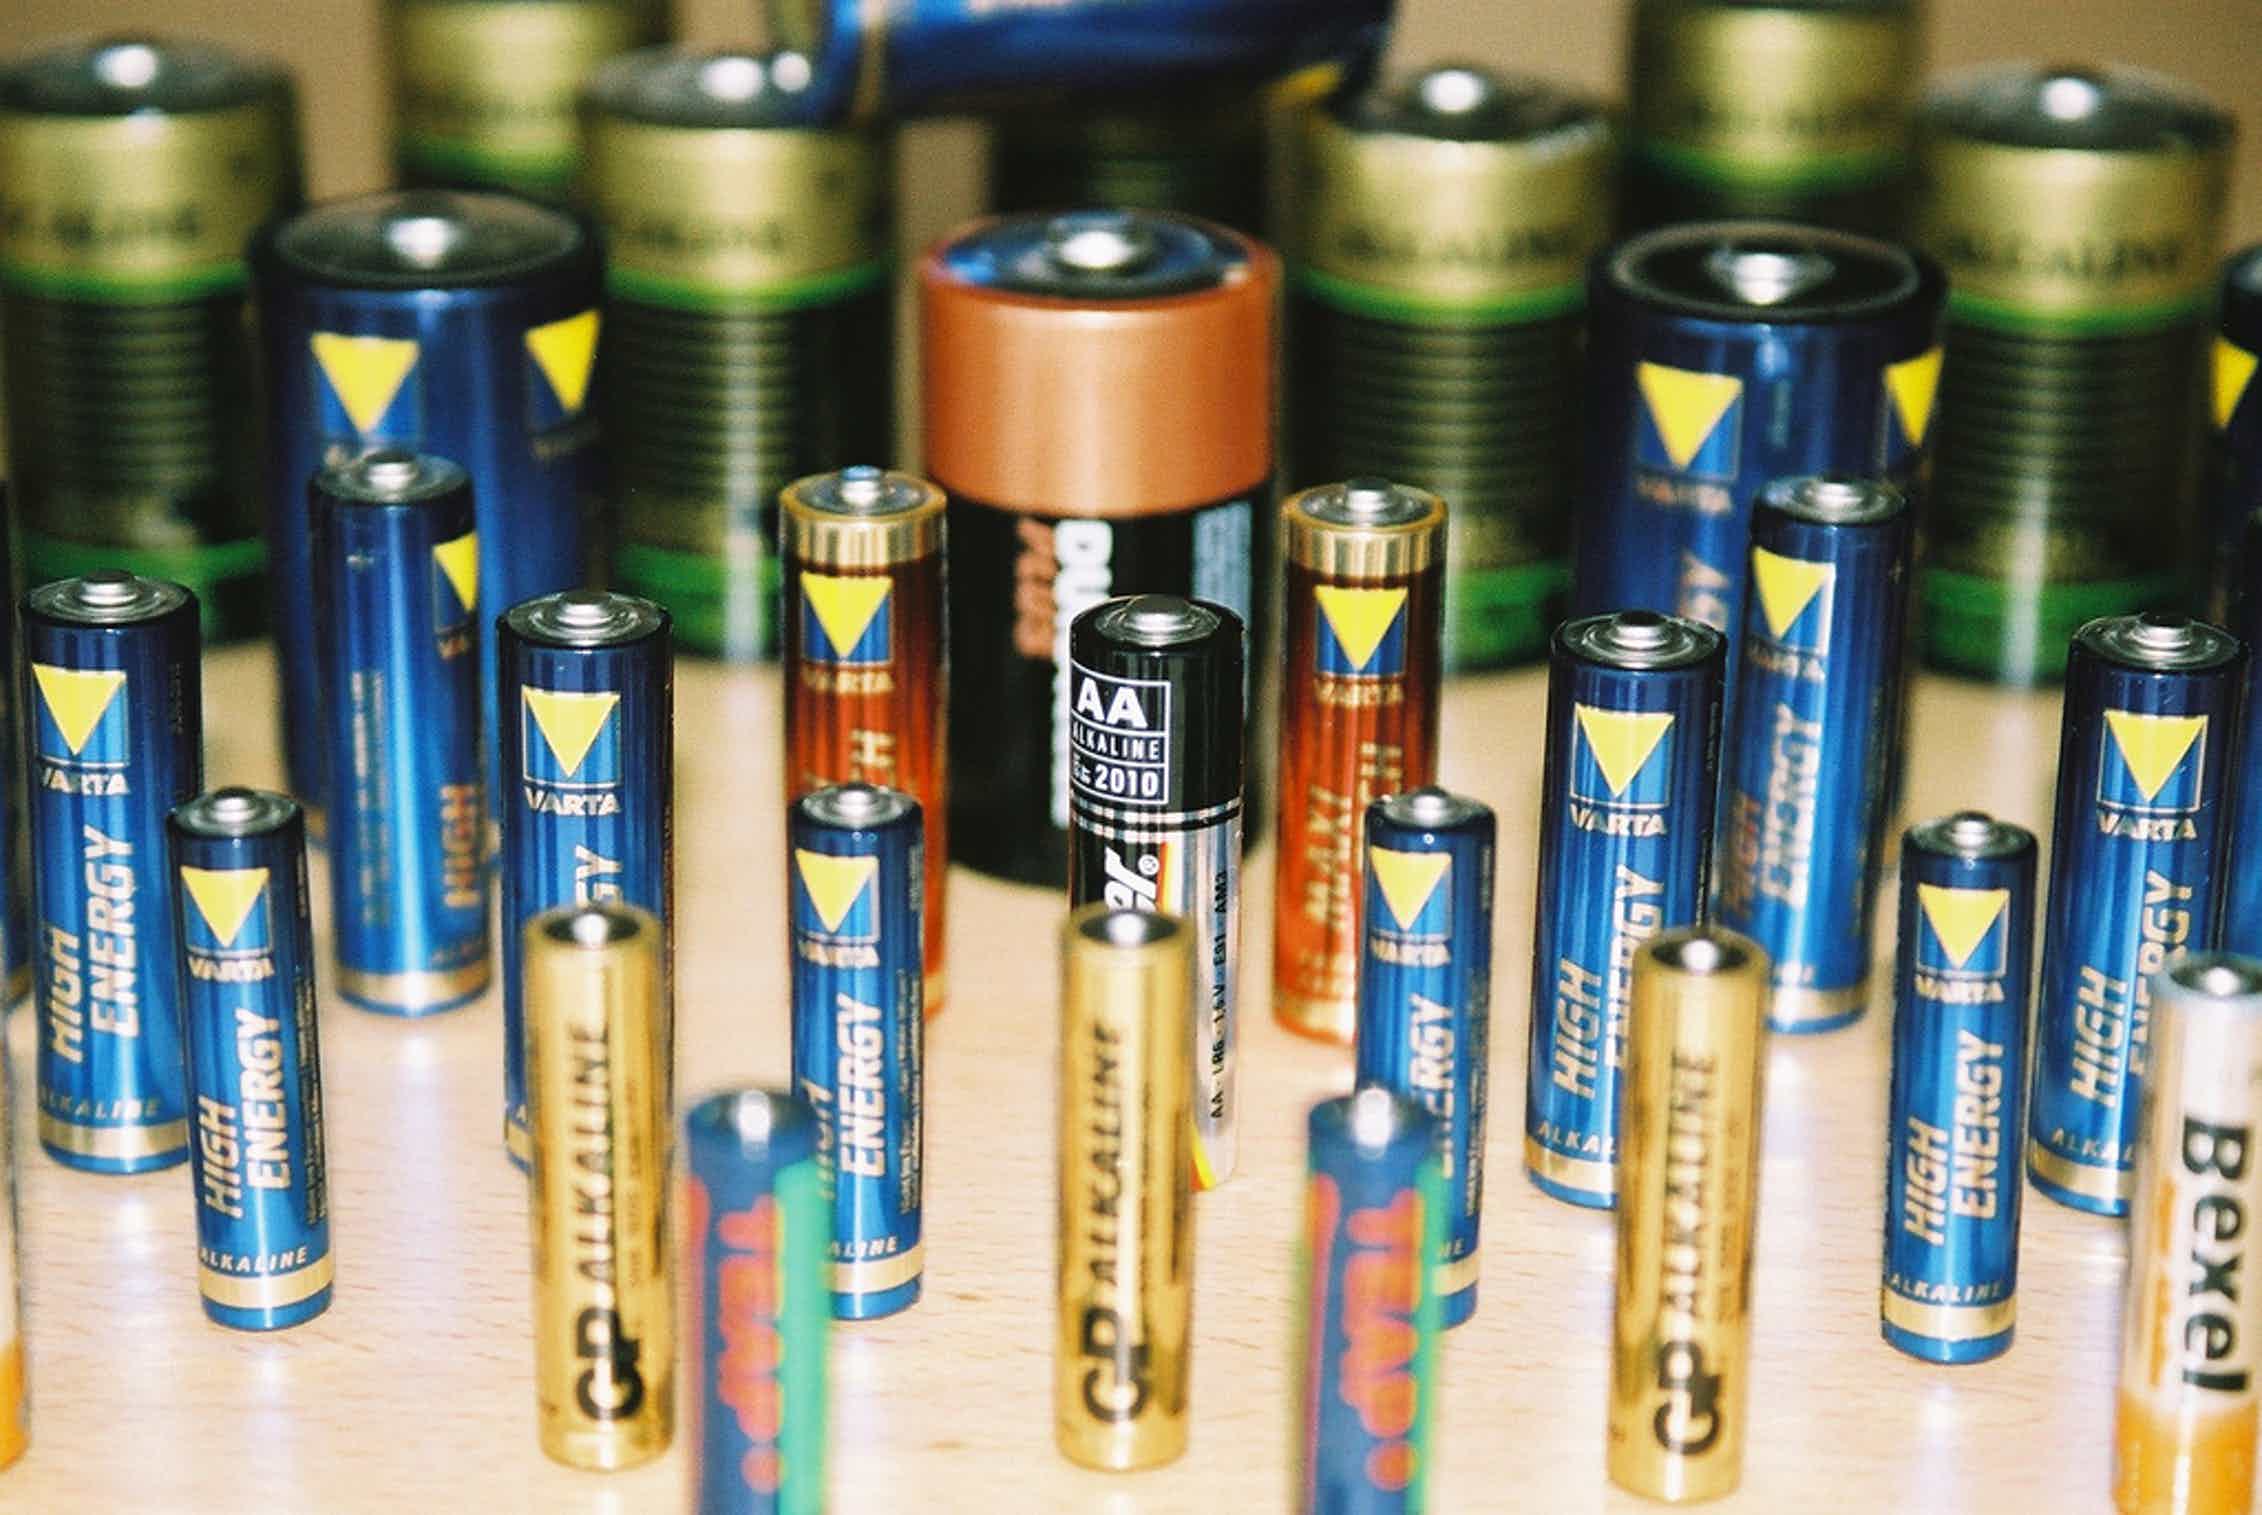 Battery many